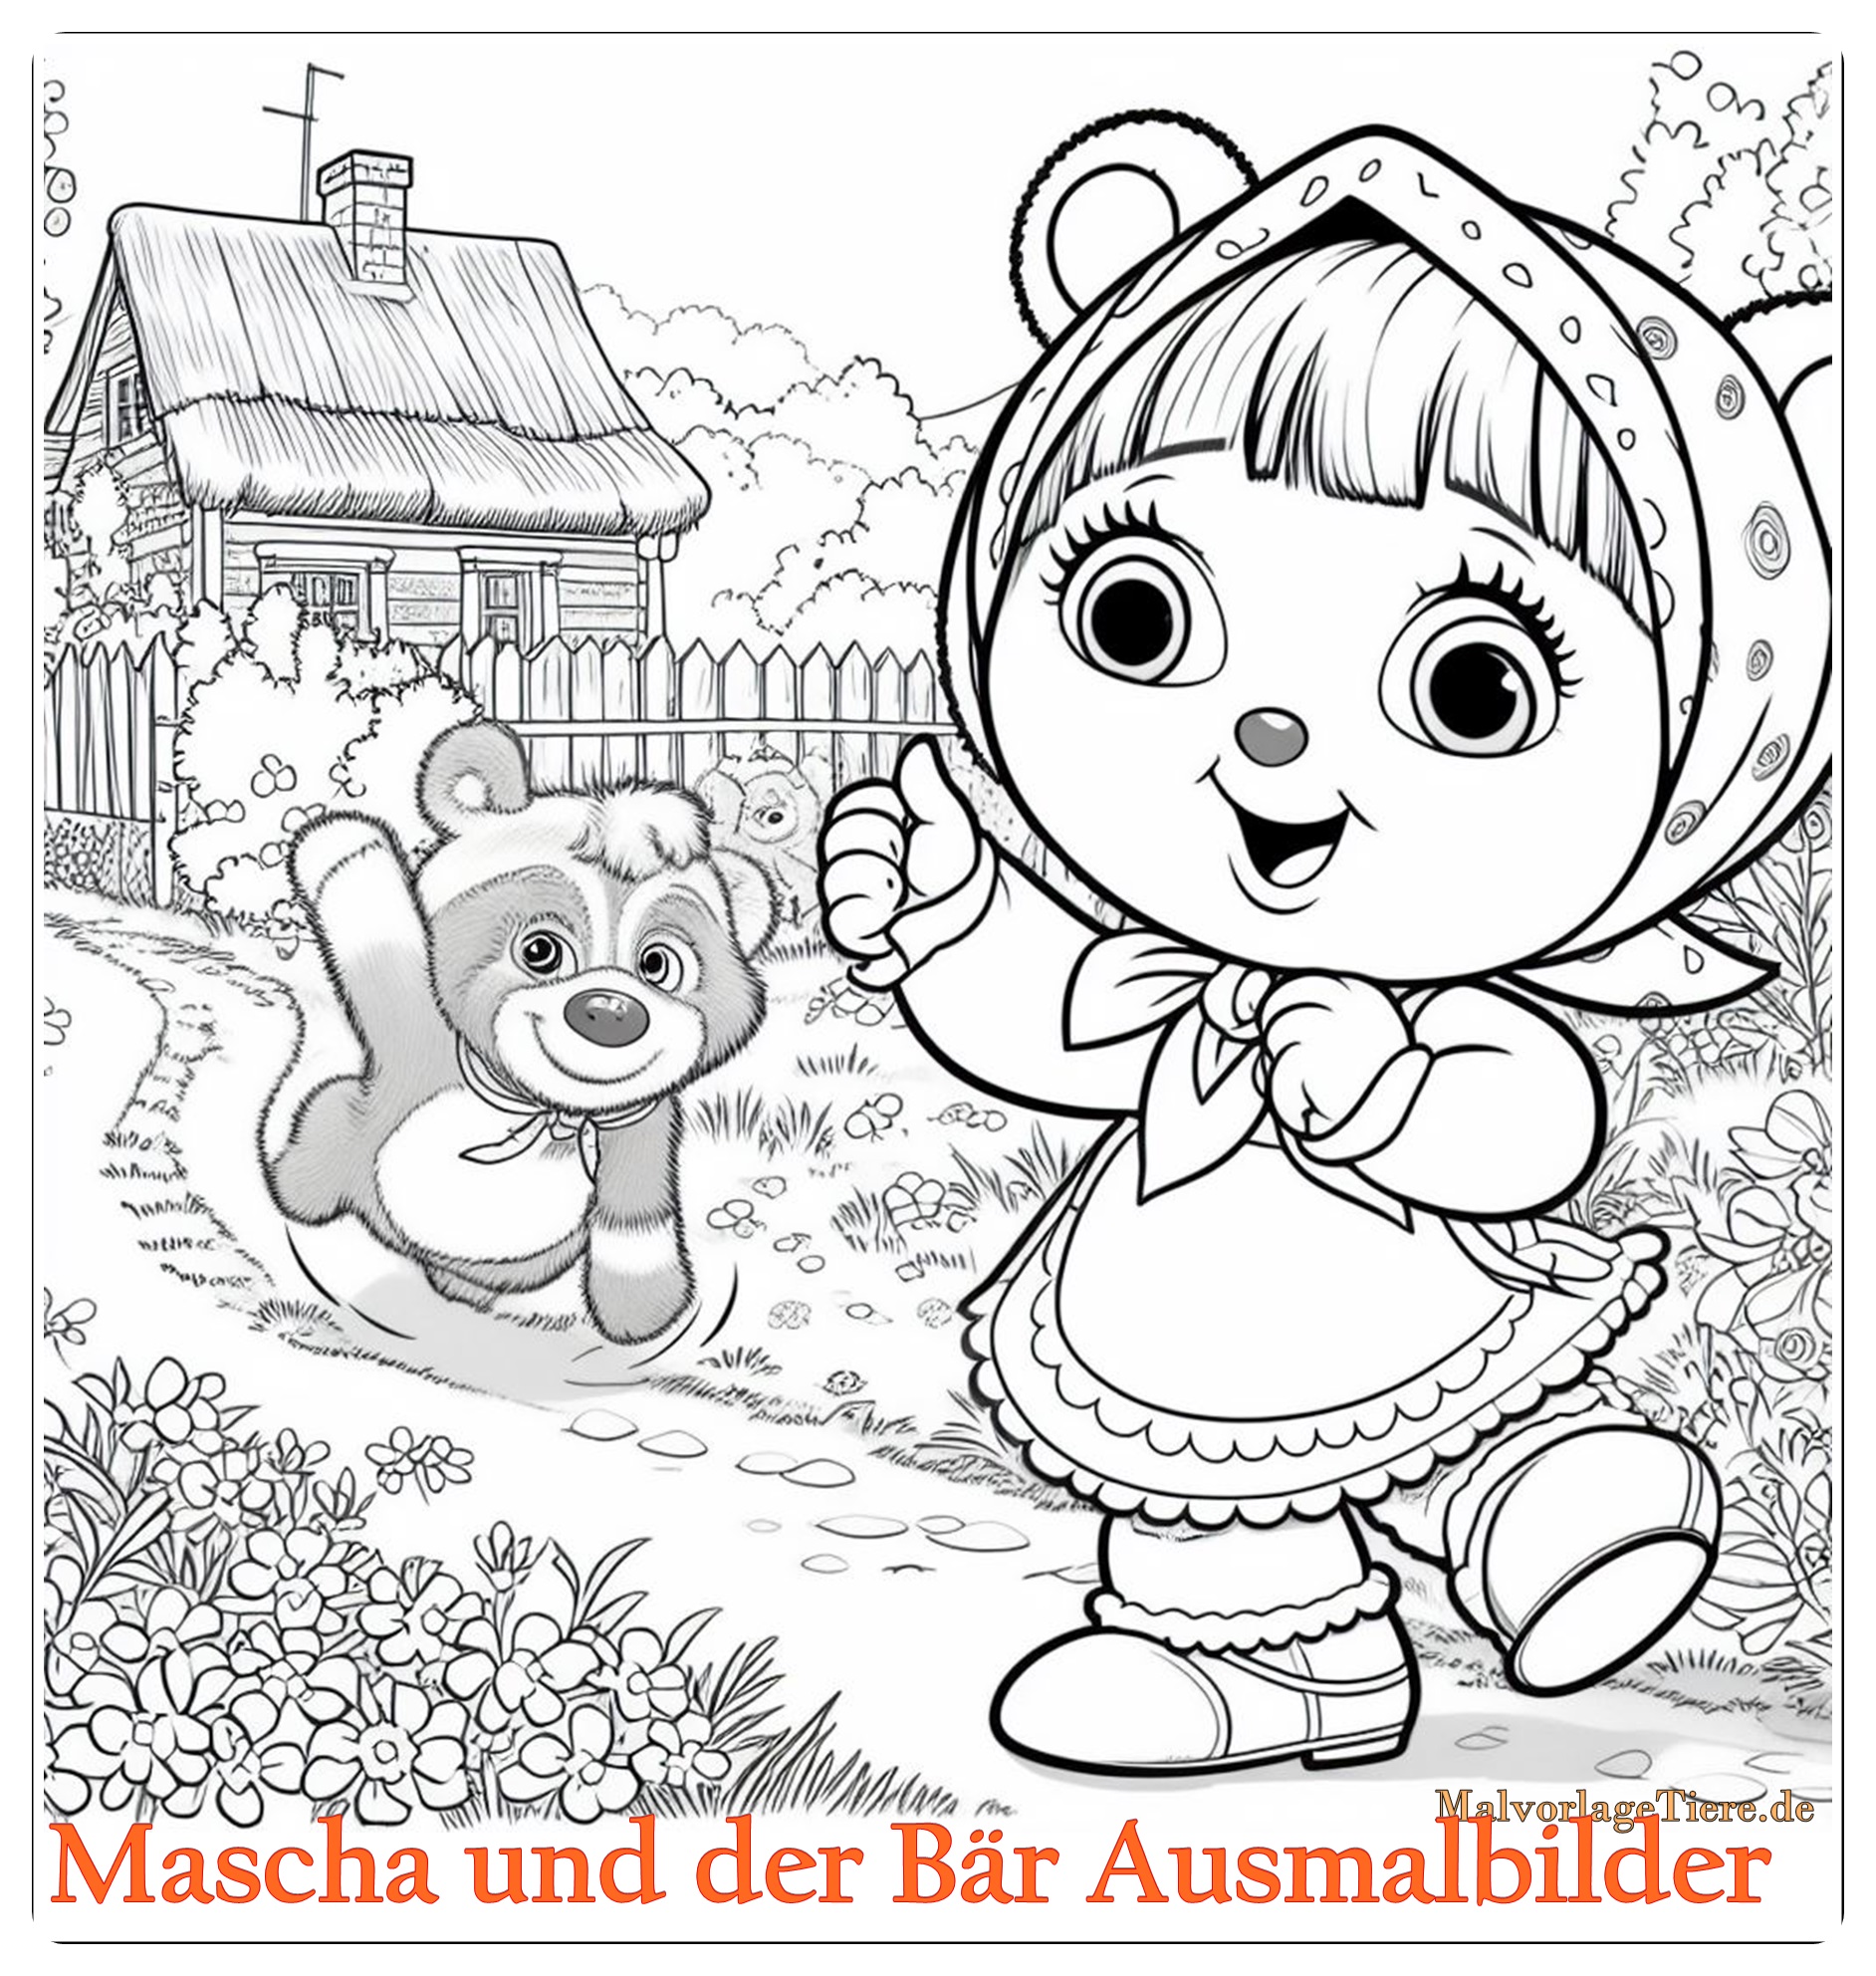 Mascha und der Bär Ausmalbilder 02 by malvorlagetiere.de